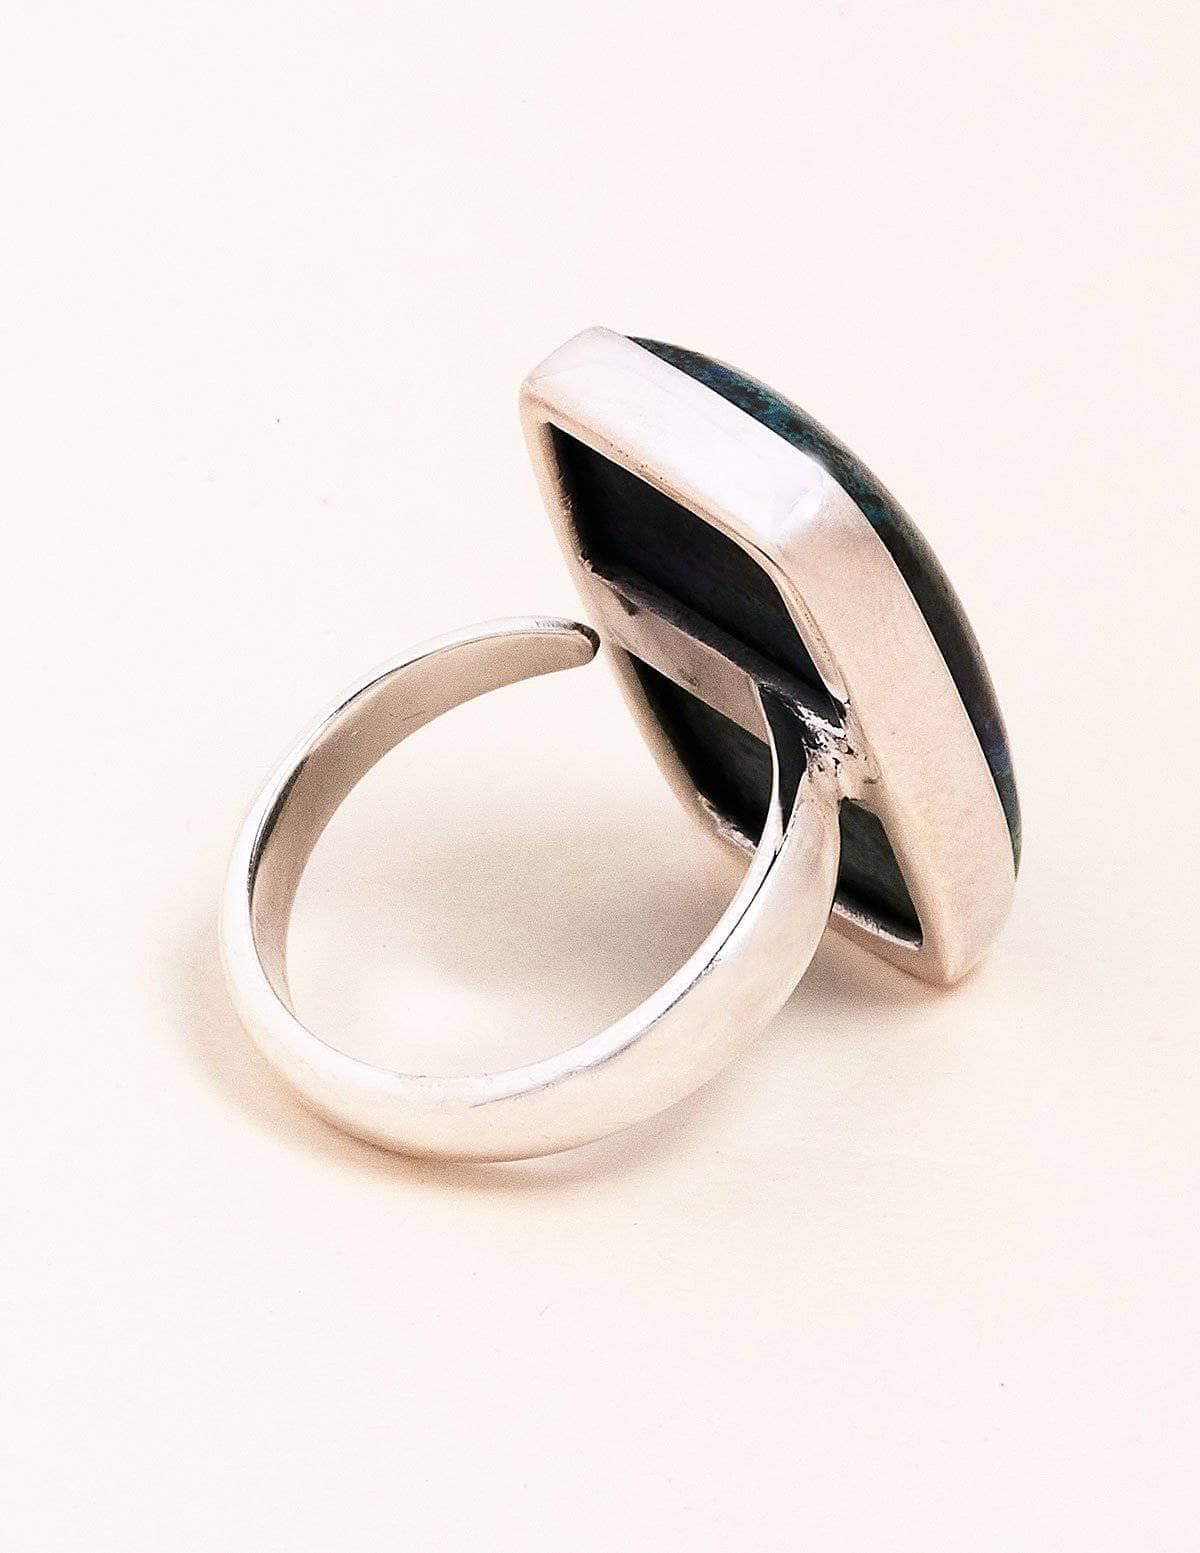 Azurite Malachite Gemstone Ring - Adjustable